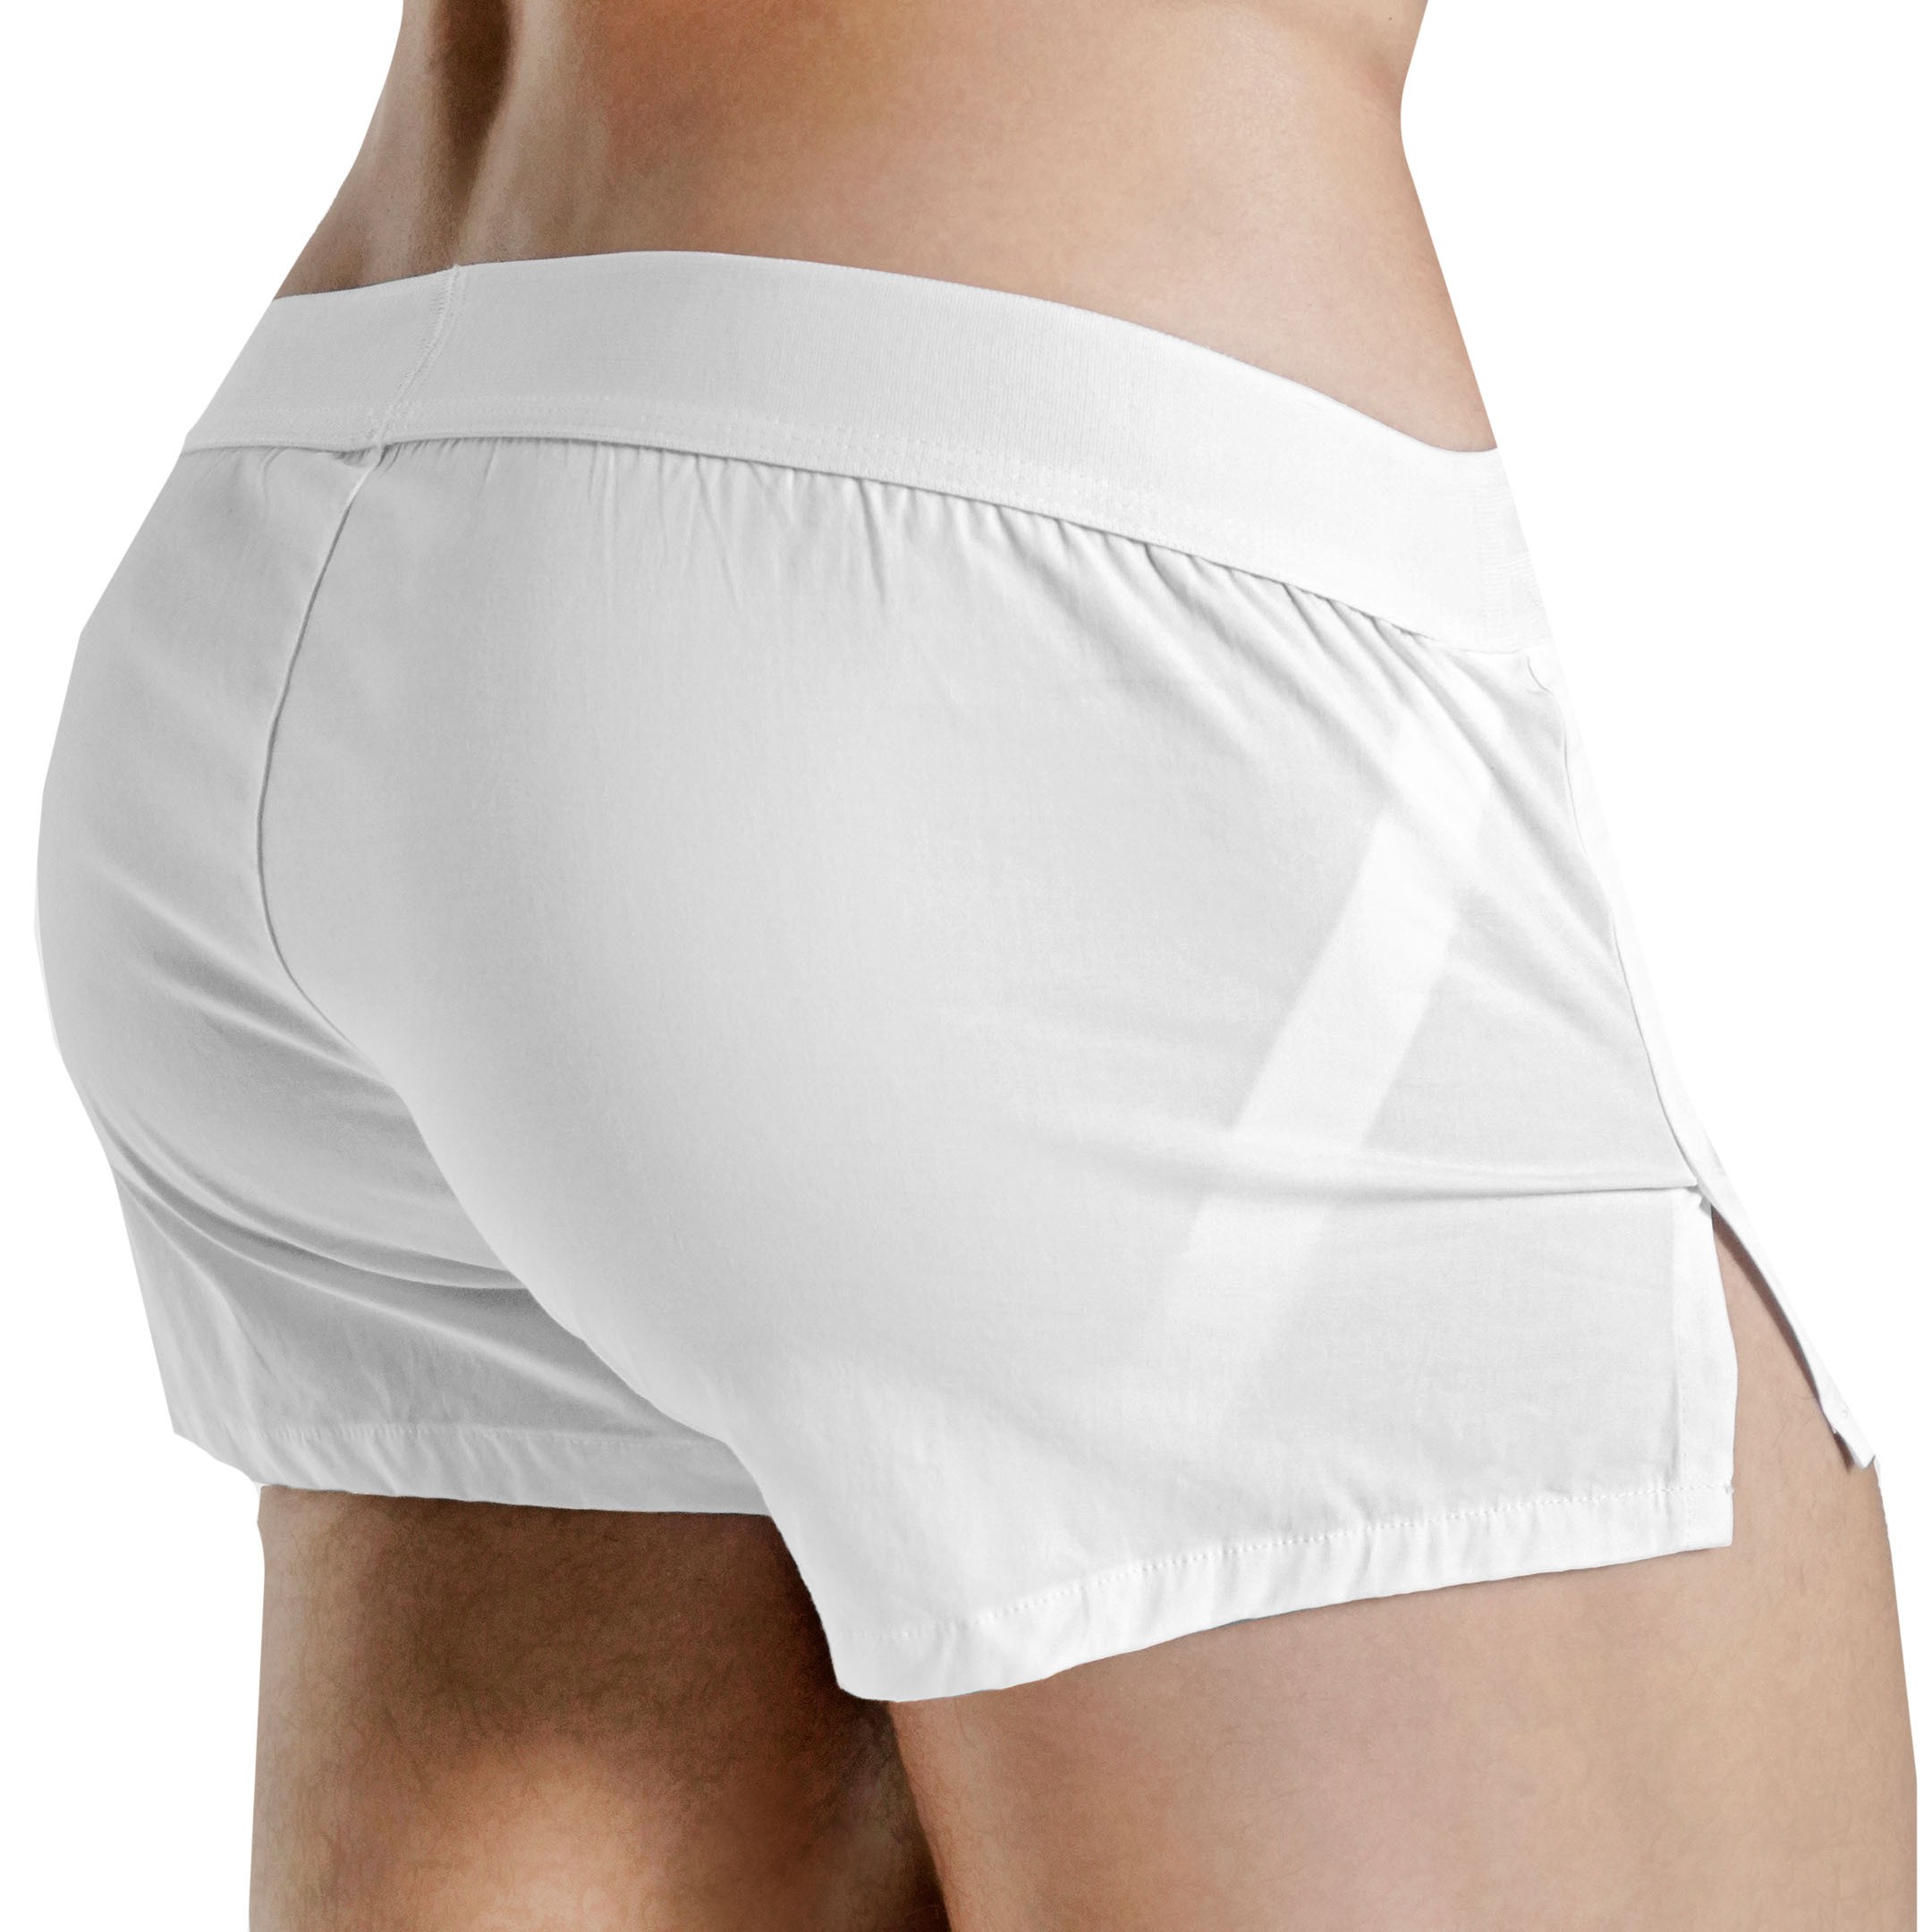 Rounderbum Basic Lift Boxer Shorts - White